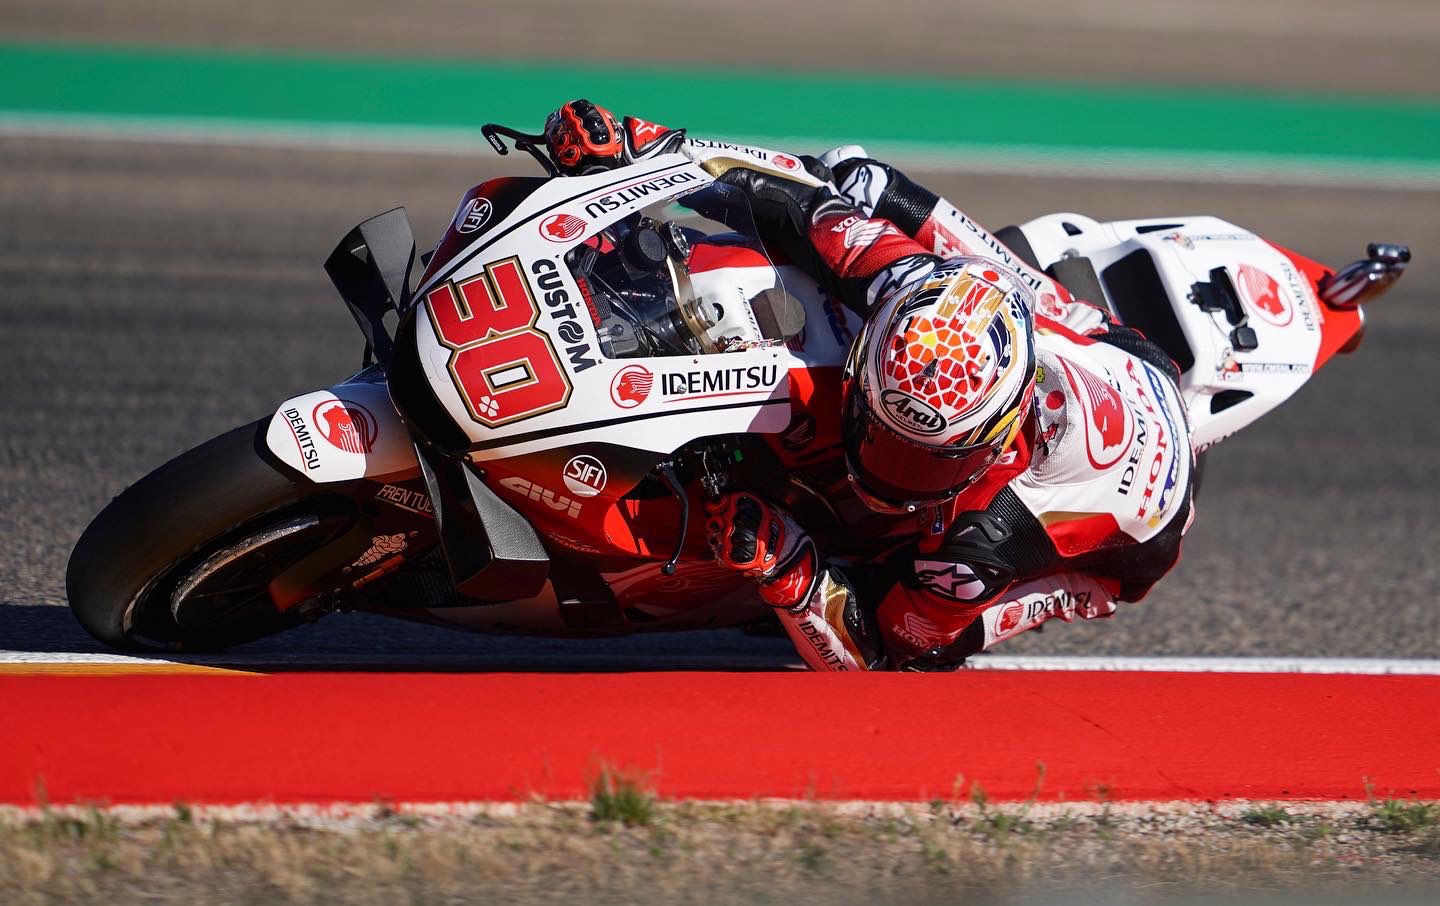 Pembalap LCR Honda Takaaki Nakagami raih pole position di Grand Prix Teruel, Aragon Spanyol. (Foto: AP Photo)